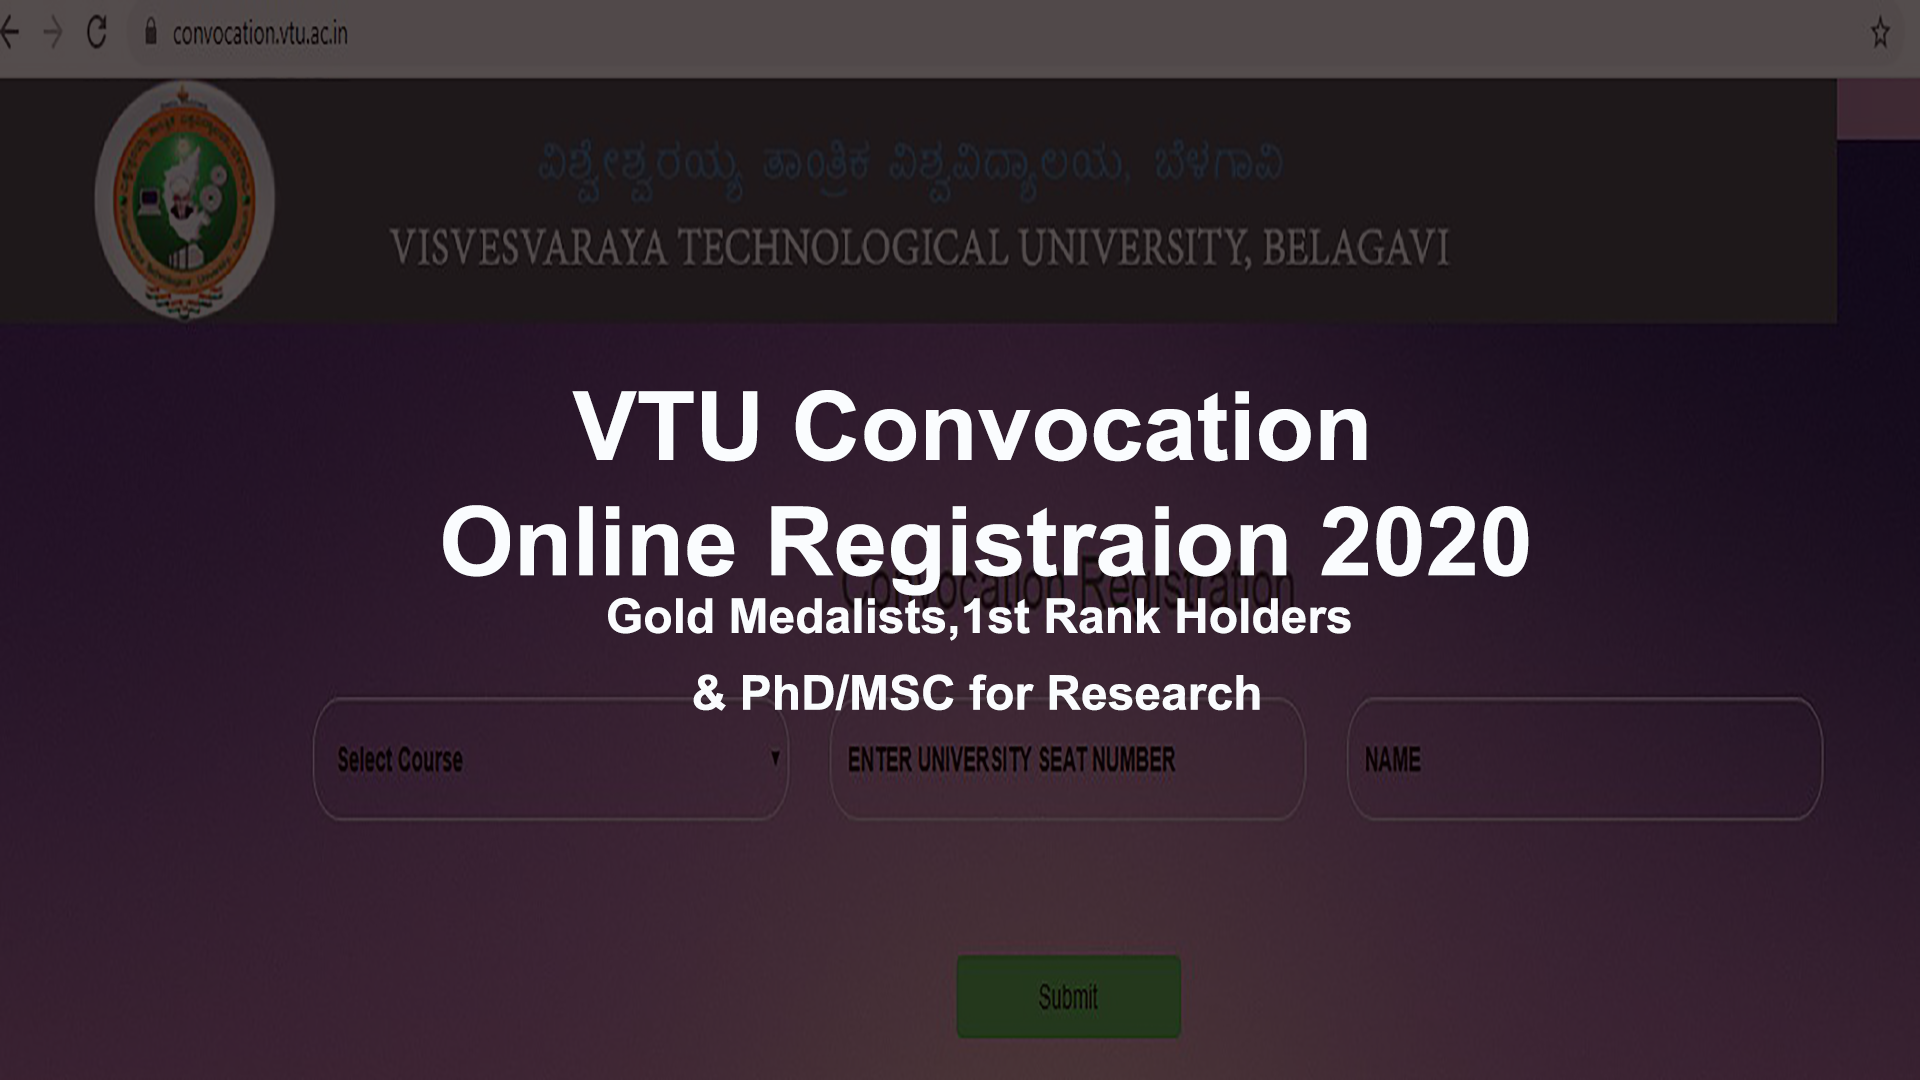 VTU Convocation Online Registration 2020